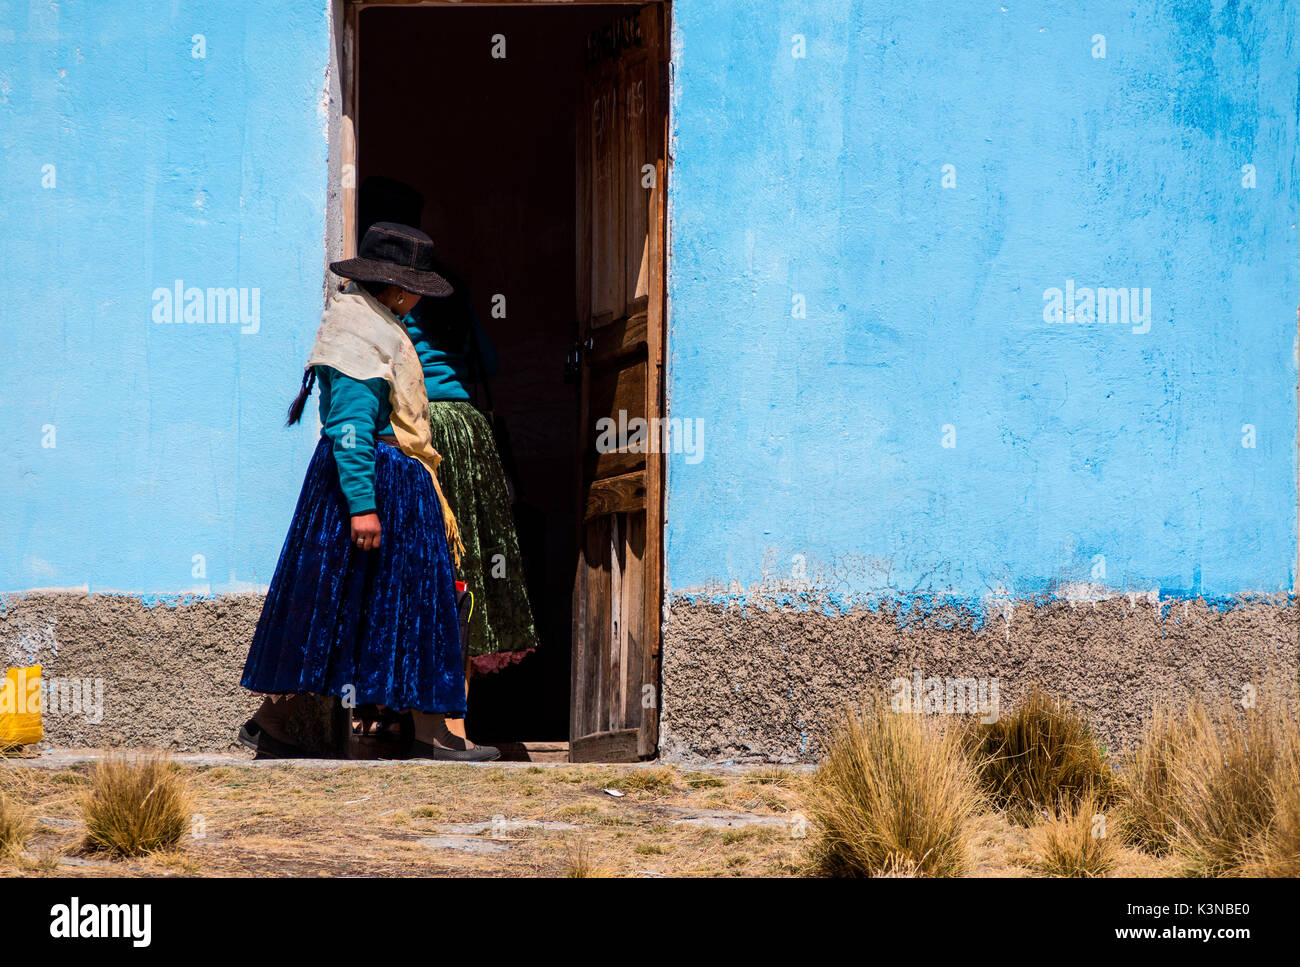 Les jeunes femmes Ayamara dans le costume typique juste à l'extérieur de sa maison de couleur. Aymaras sont la population indigène de la région du Lac Titicaca, en Bolivie, l'Amérique du Sud. Banque D'Images